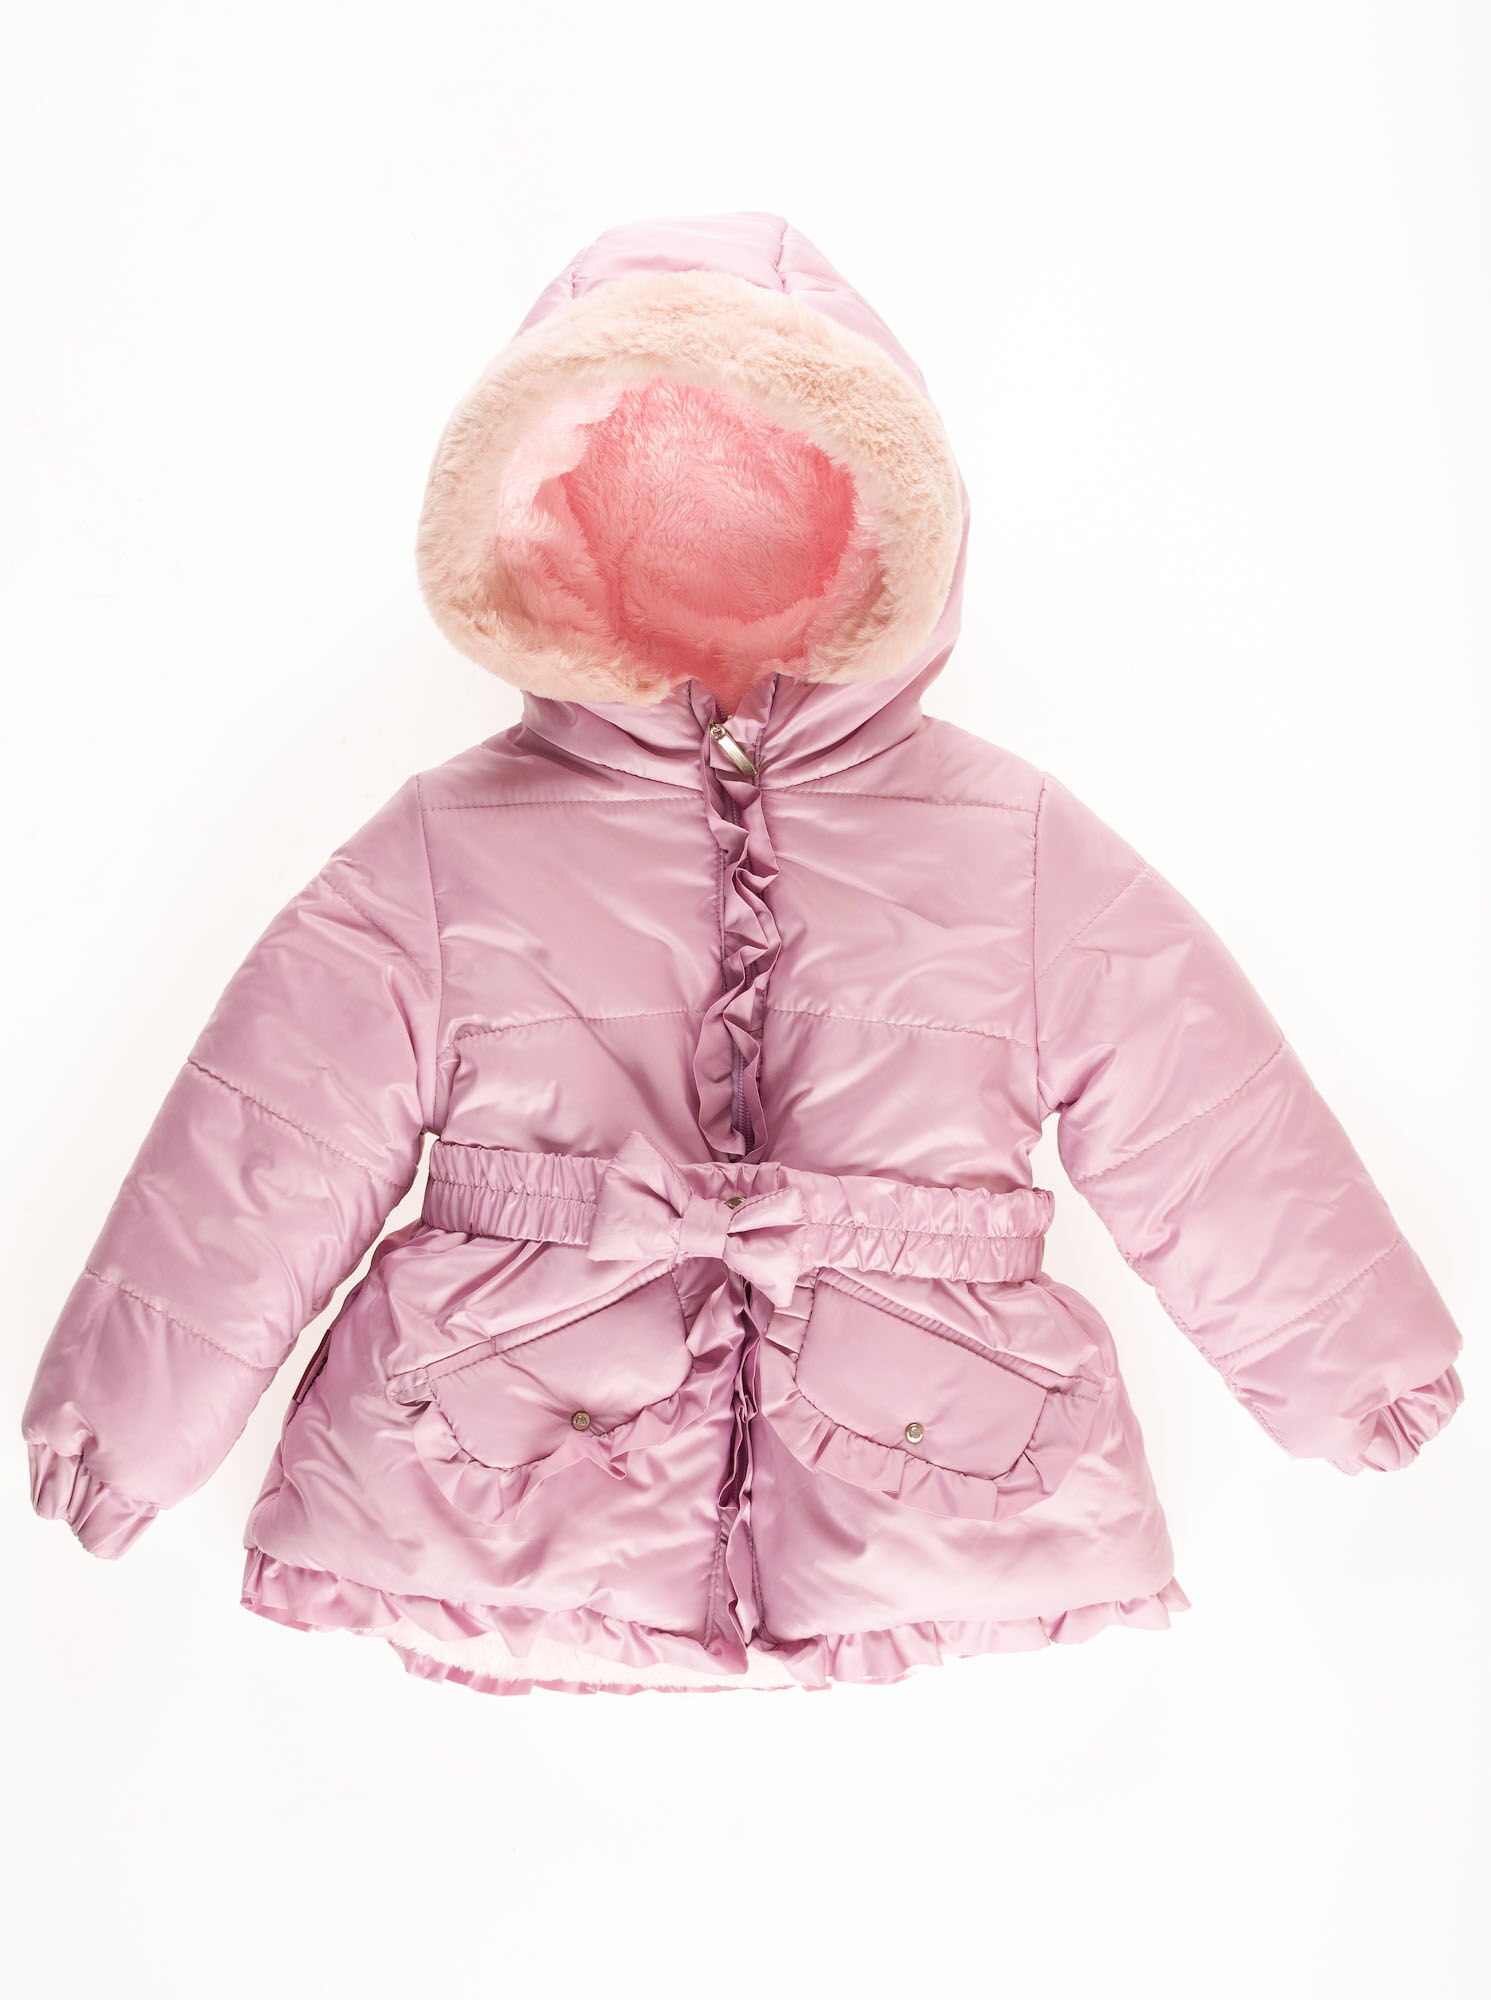 Куртка зимняя для девочки Одягайко сиреневая 20085 - цена